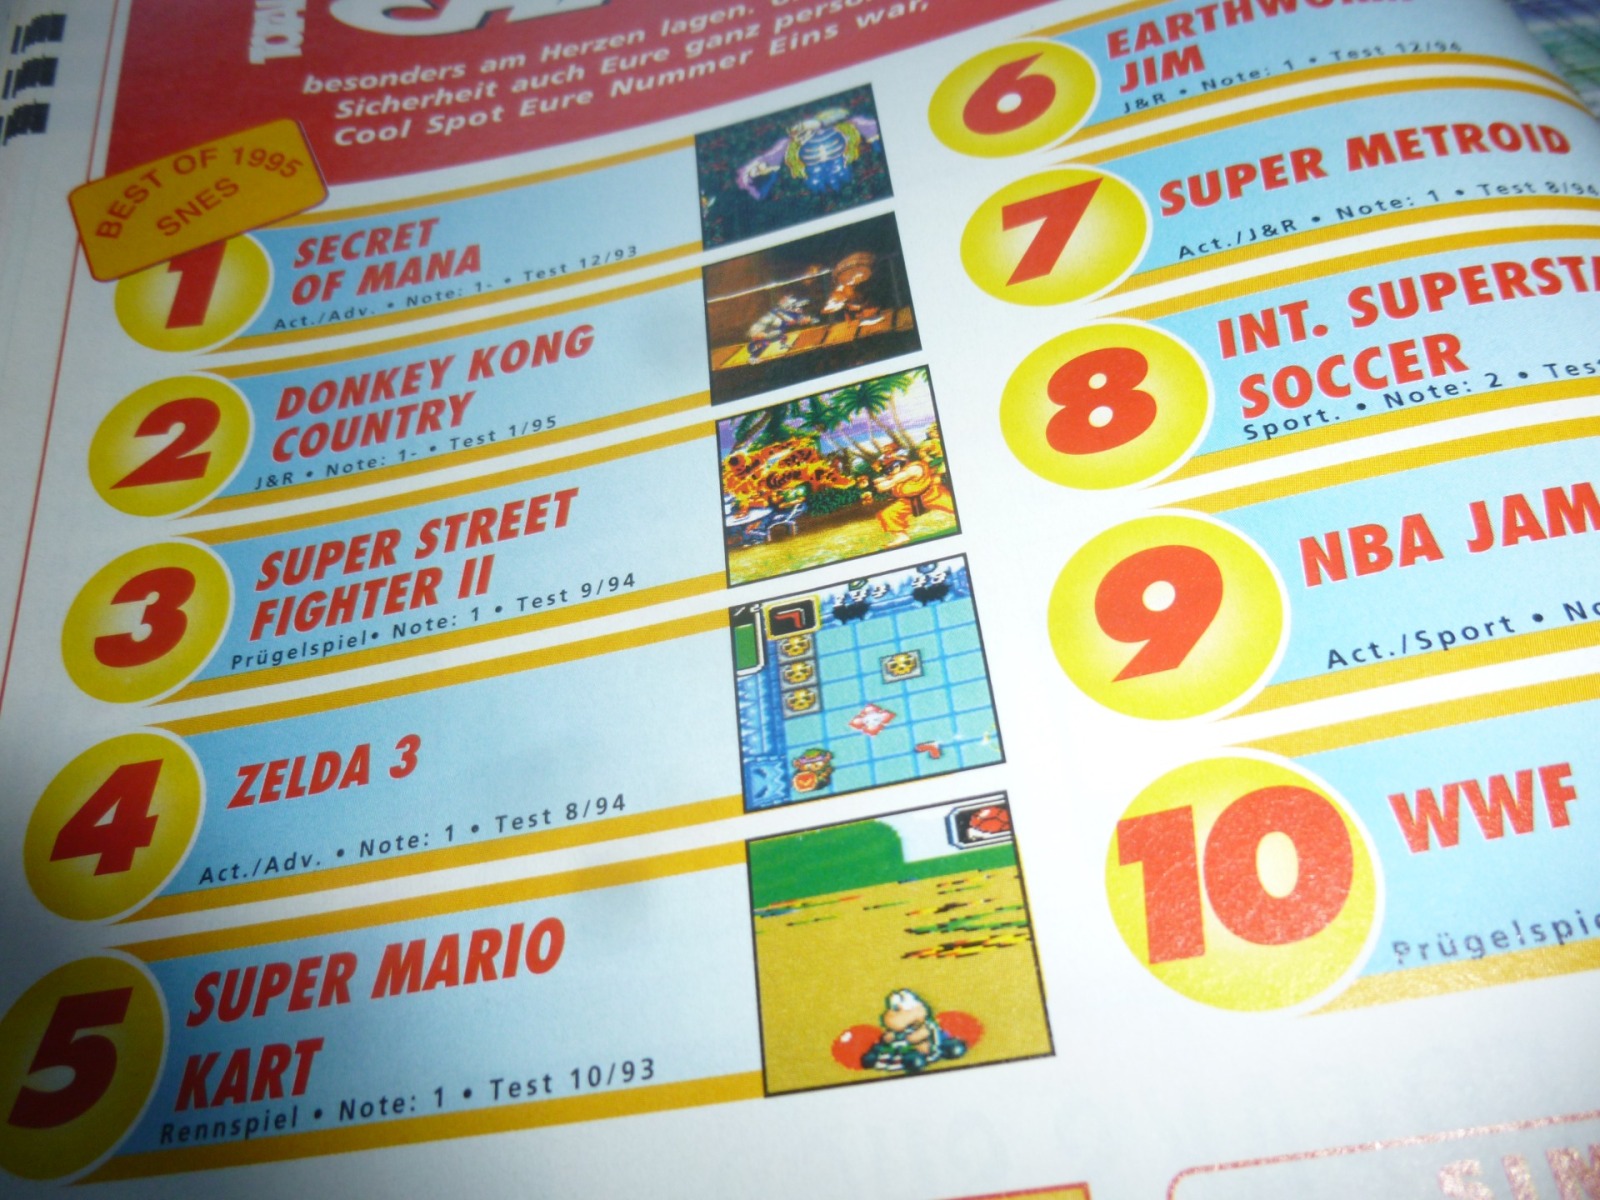 TOTAL Das unabhängige Magazin - 100 Nintendo - Ausgabe 2/96 1996 15